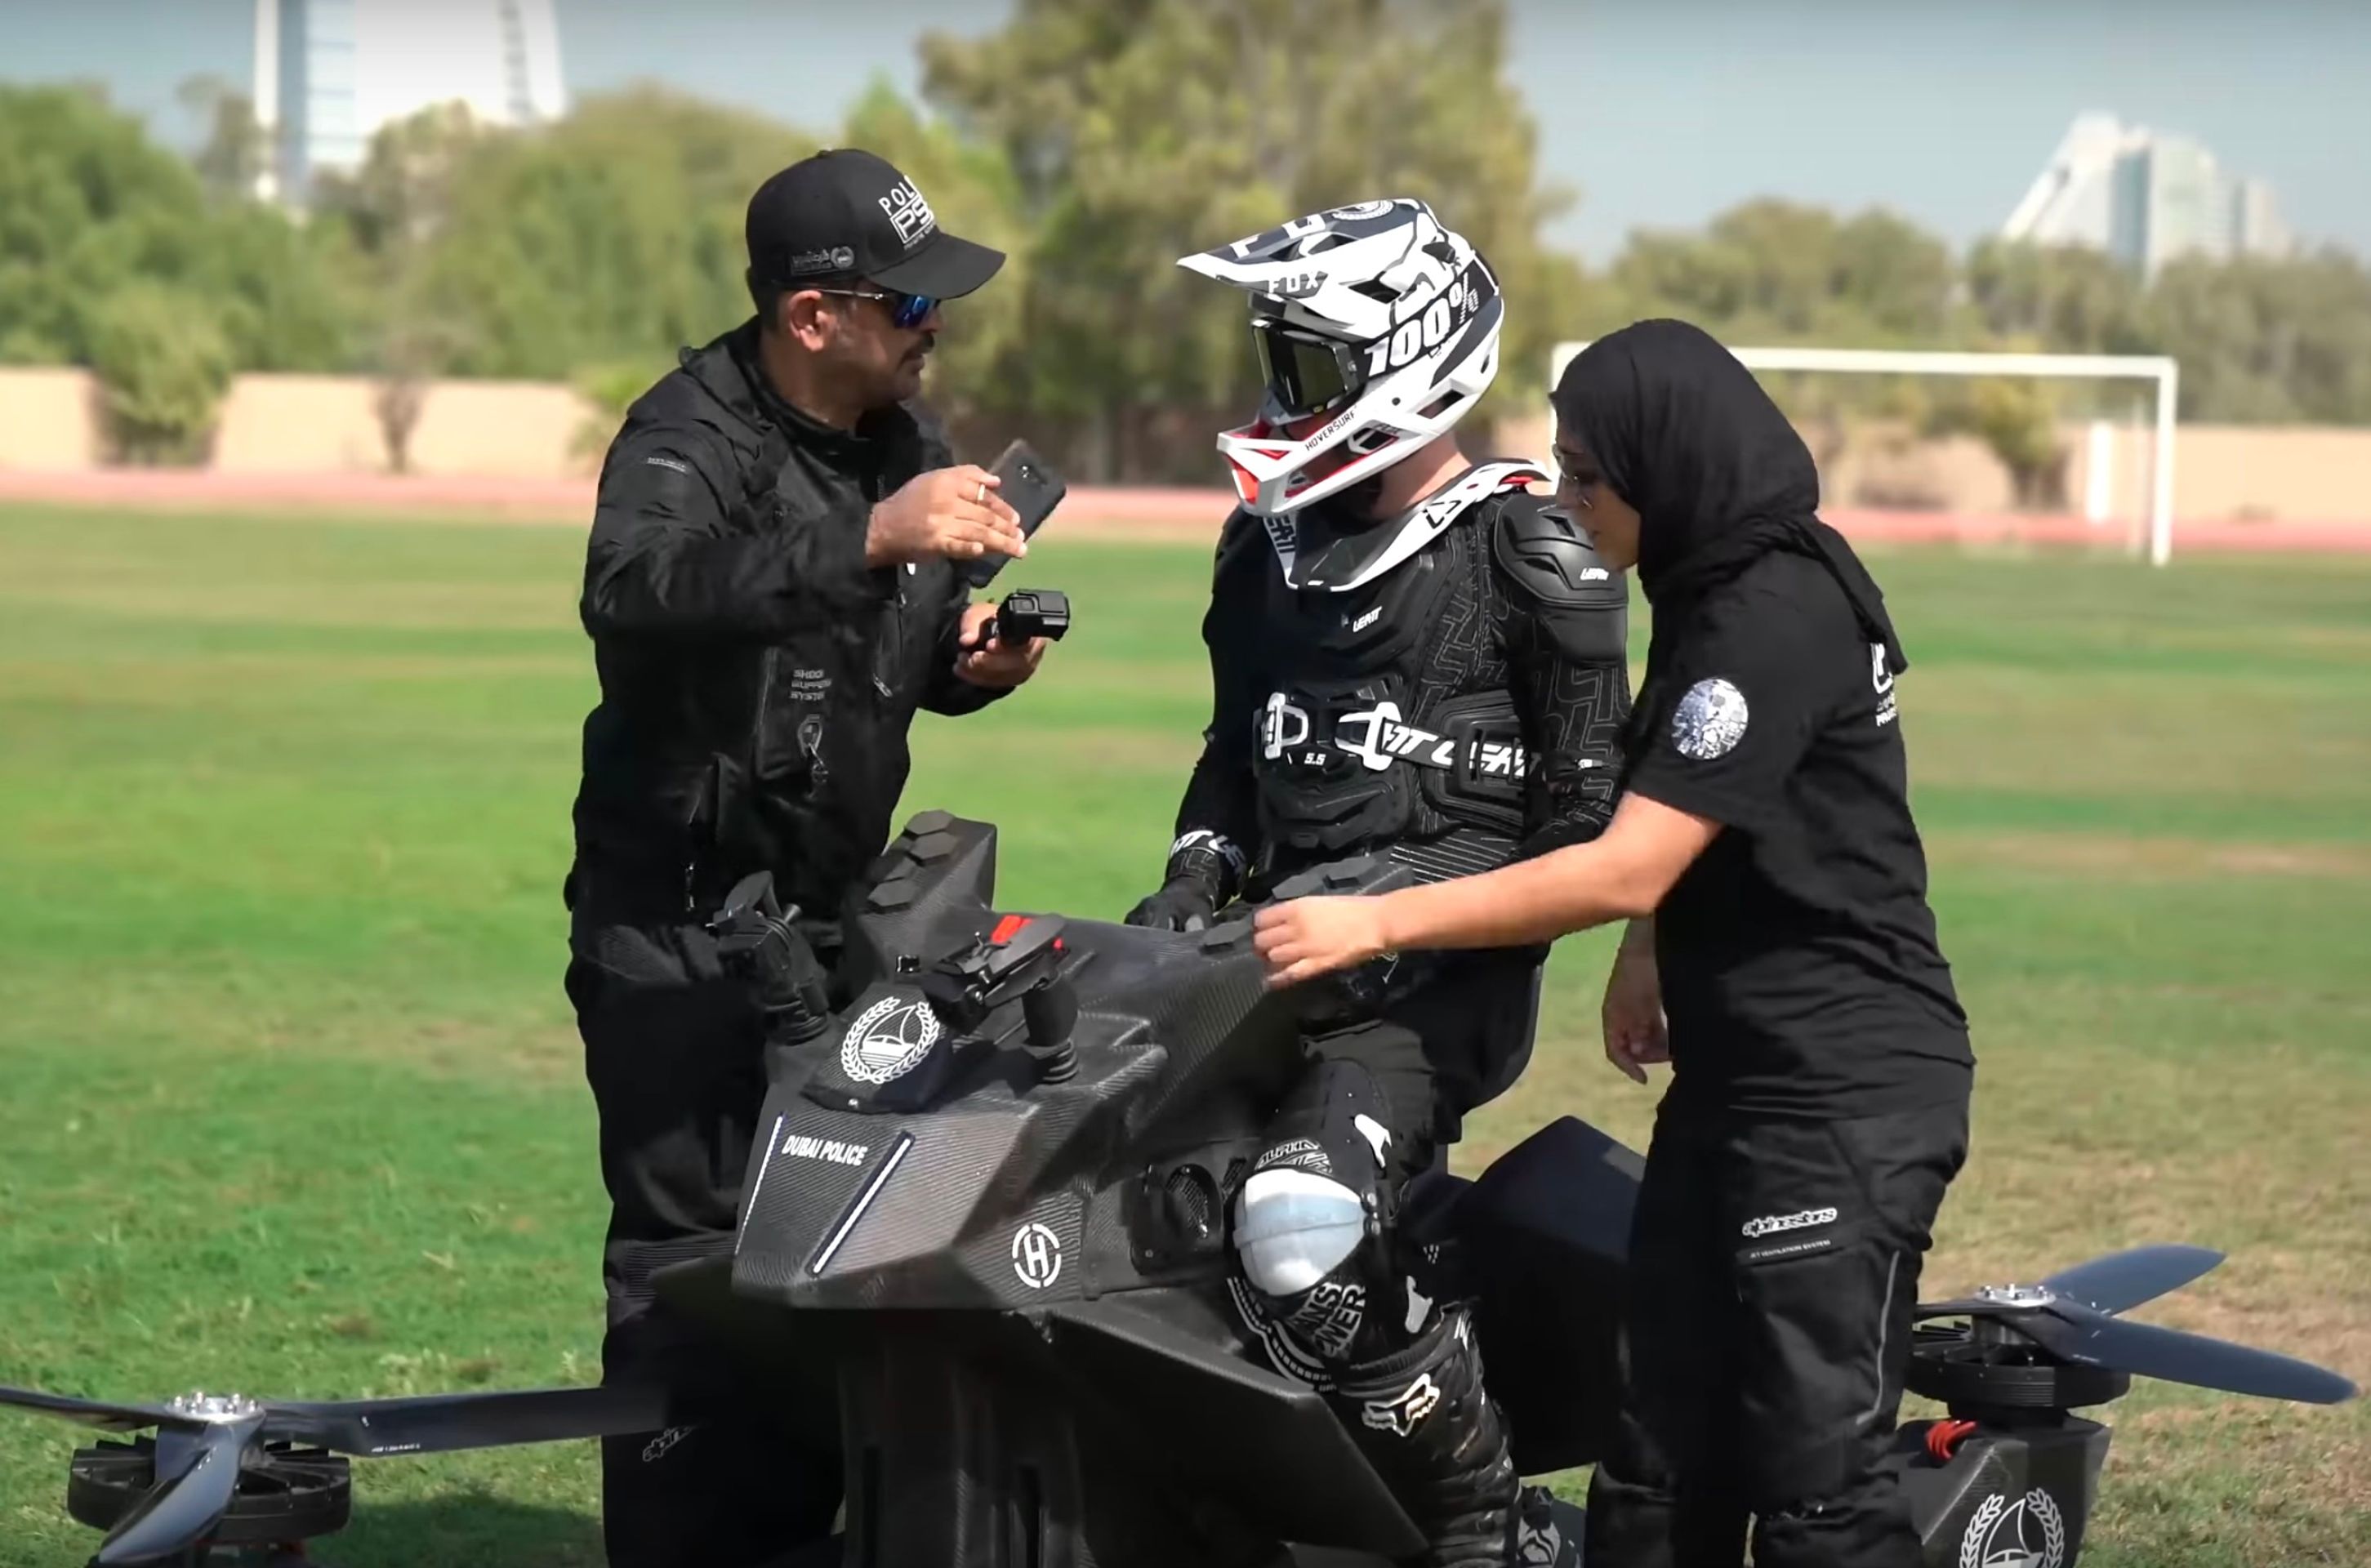 Létající motorka Hoverbike S3 2019 - 13 - Fotogalerie: Výcvik dubajské policie na létajícím stroji (7/10)